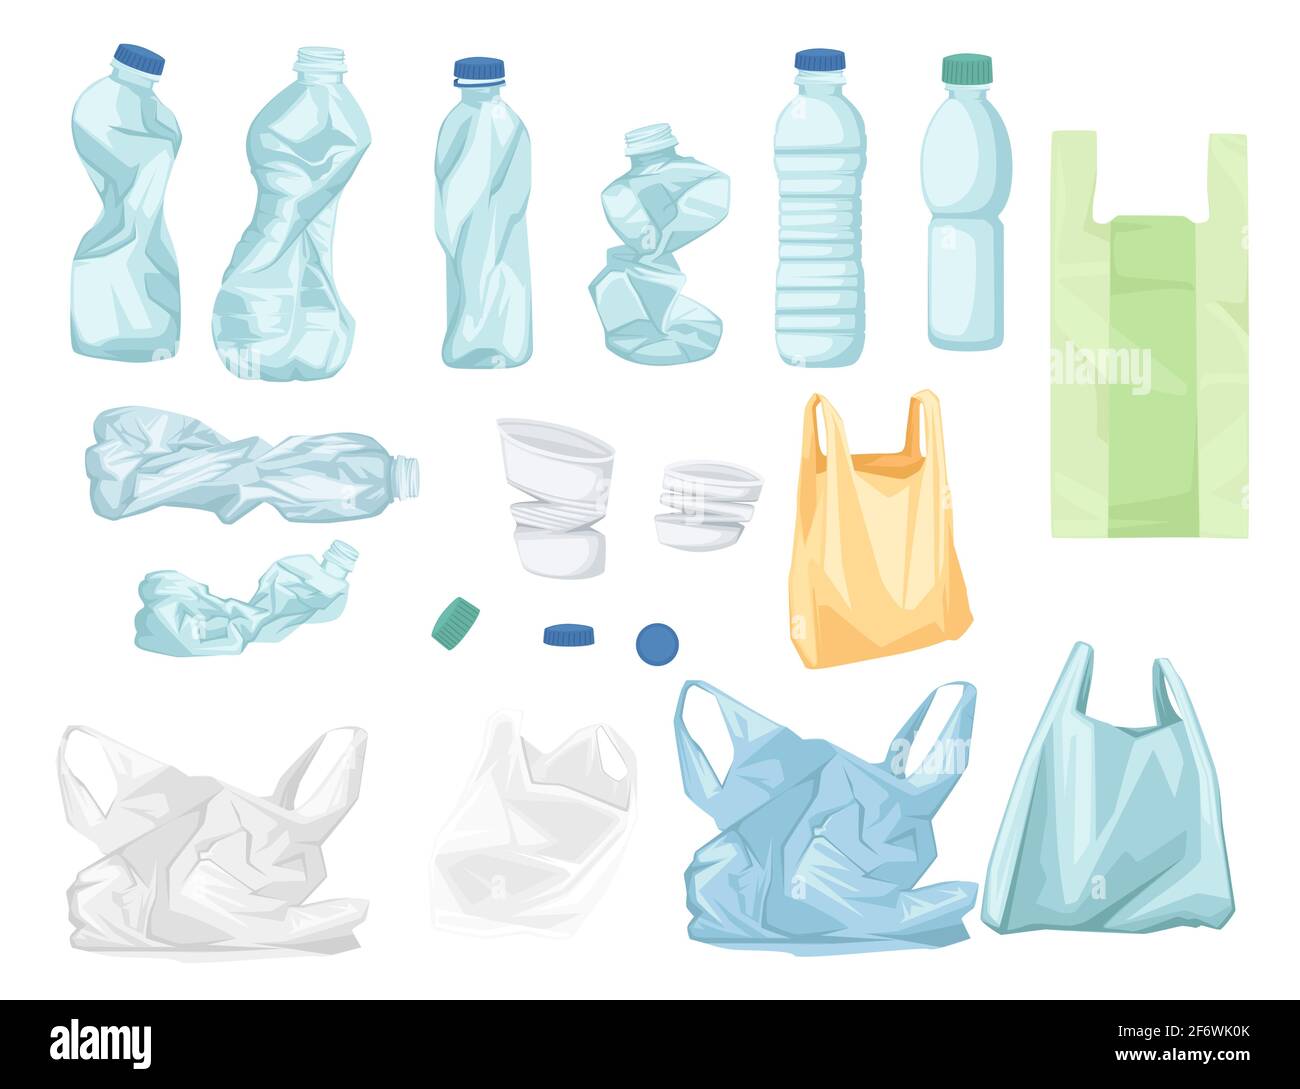 Jeu de sacs et de bouteilles en plastique recyclage écologie problème illustration vectorielle isolée sur fond blanc. Illustration de Vecteur